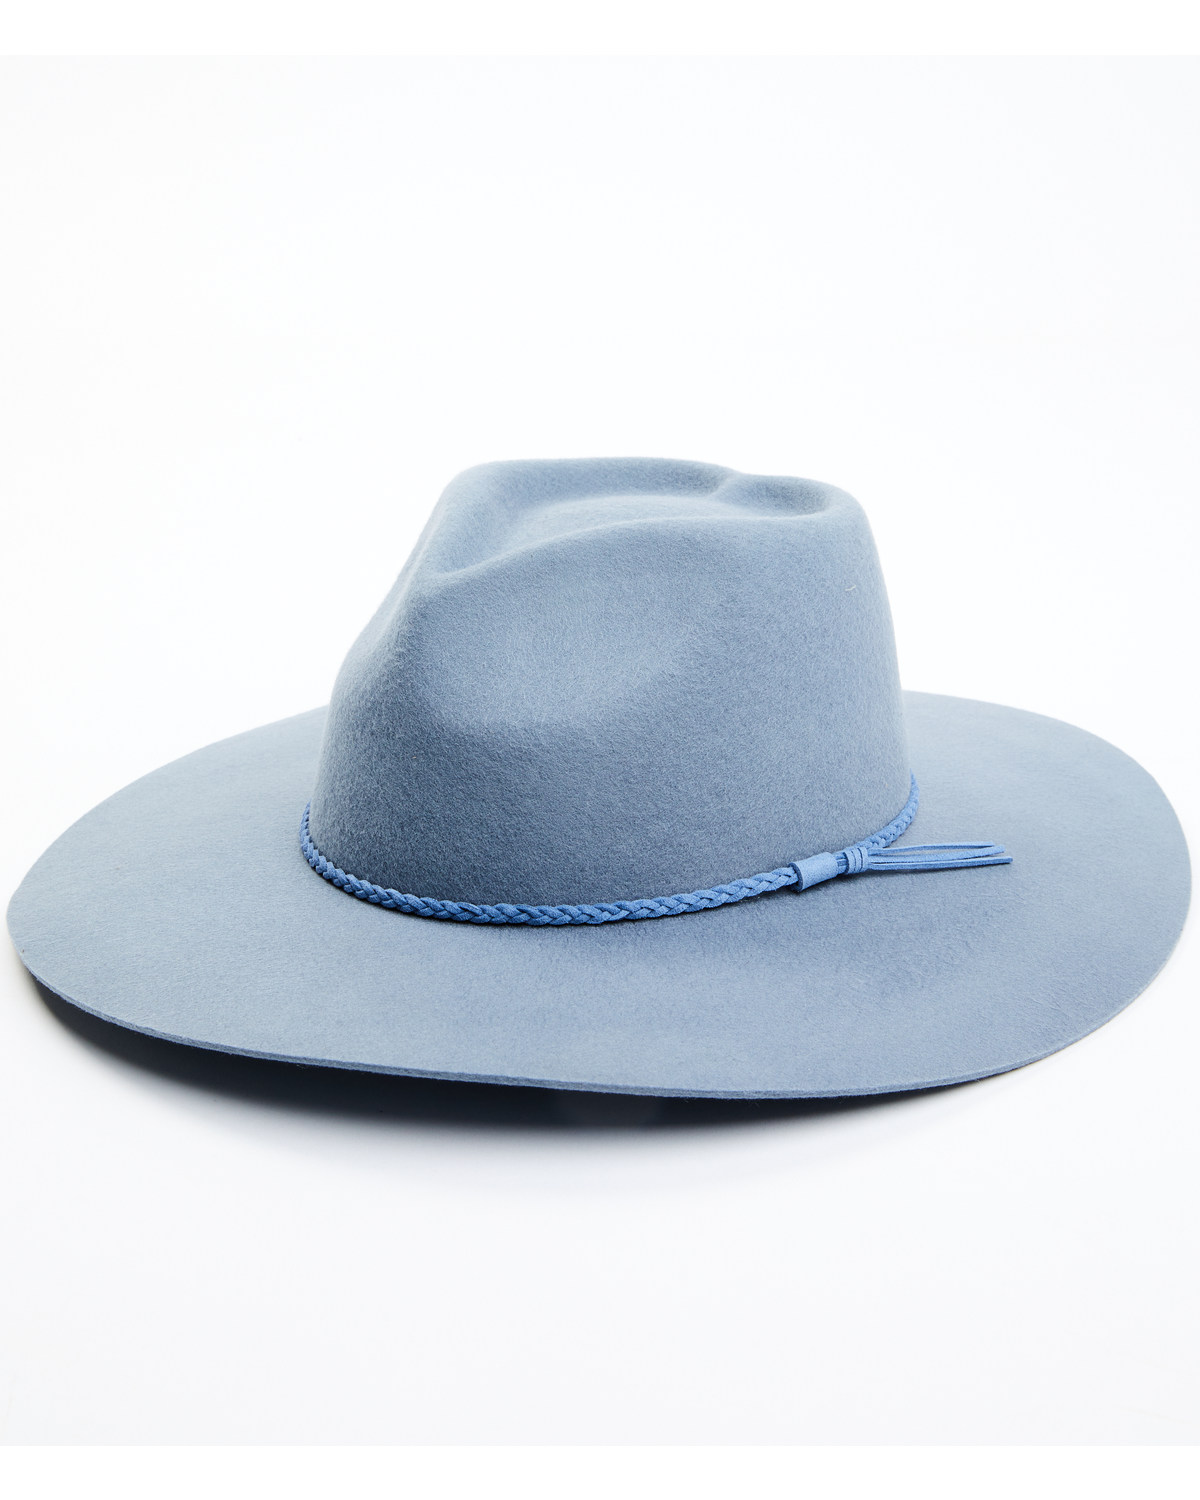 Peter Grimm Women's Amor Mio Felt Western Hat